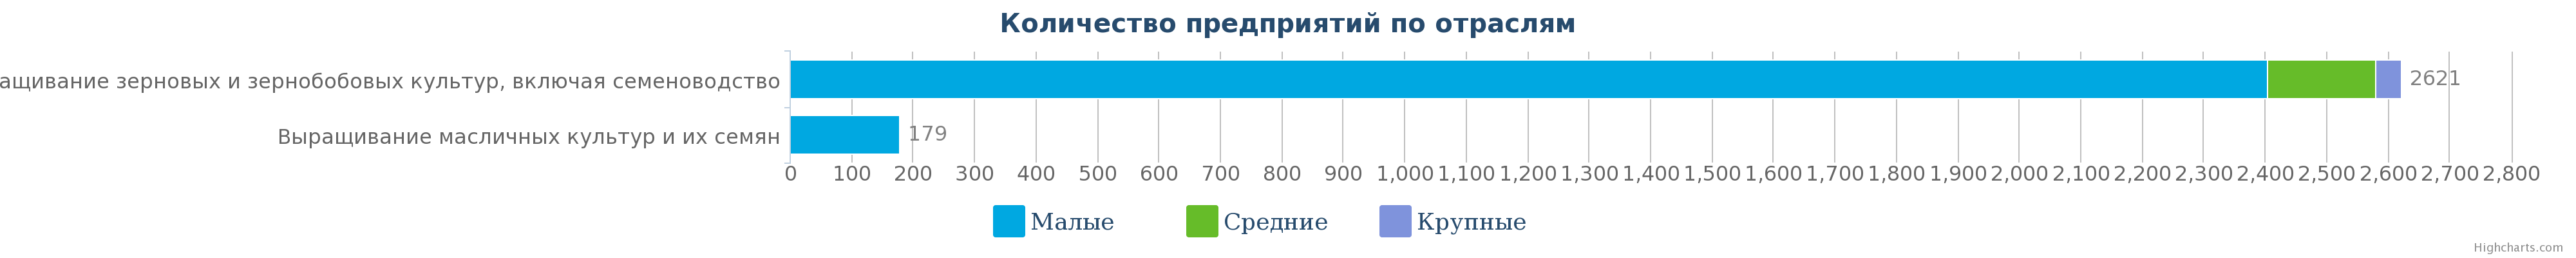 Количество компаний, выращивающие зерновые и бобовые культуры, Казахстана по размерам предприятия на 27.03.2017